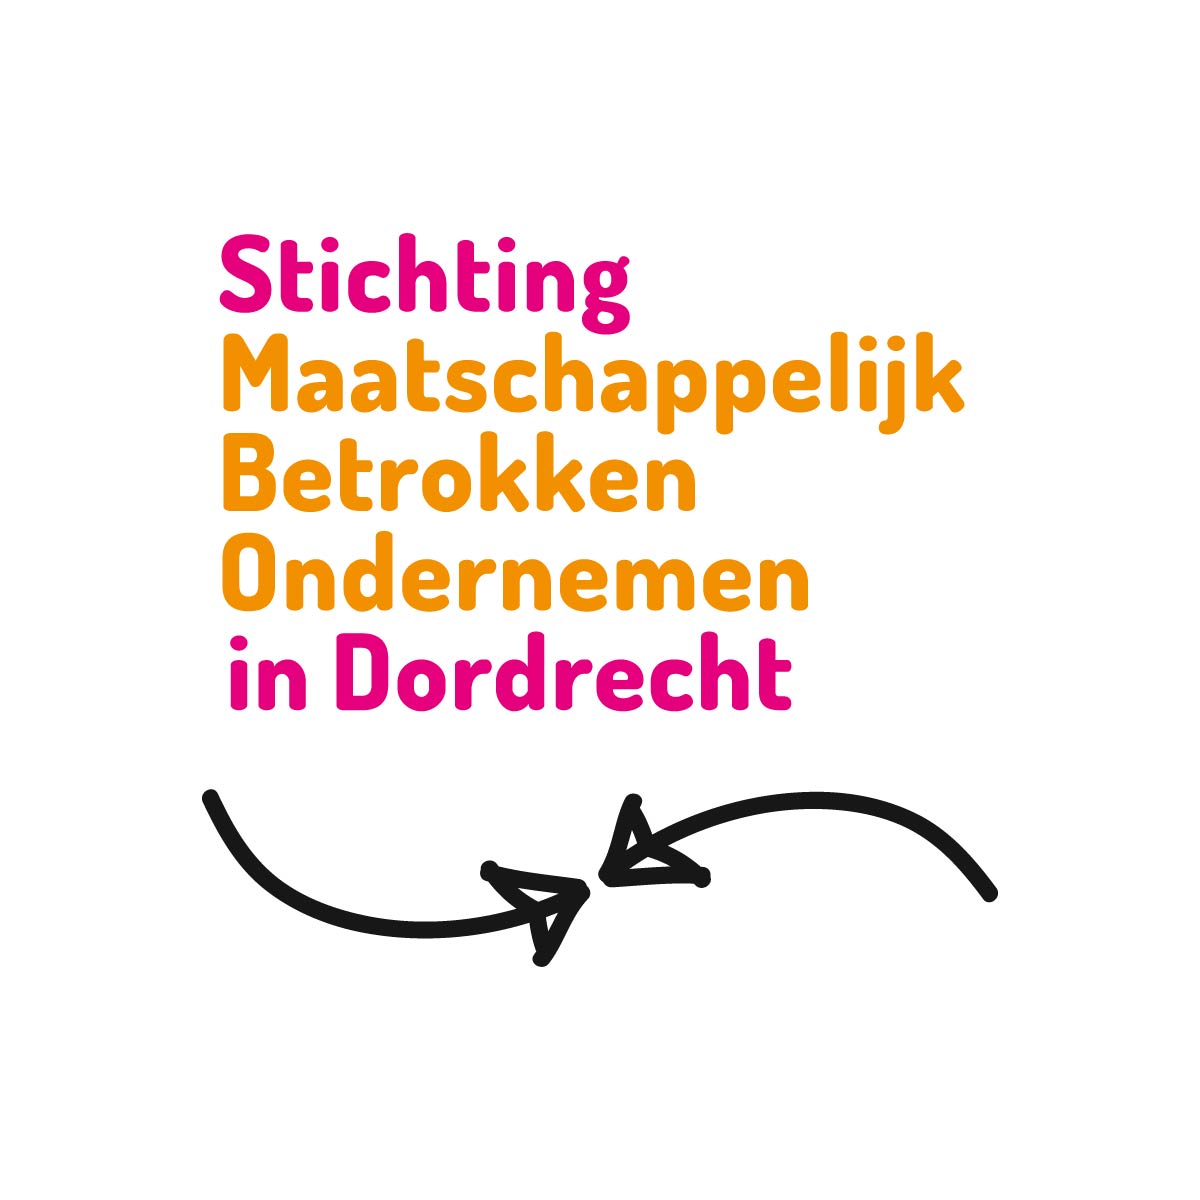 Stichting Maatschappelijk betrokken ondernemen in Dordrecht